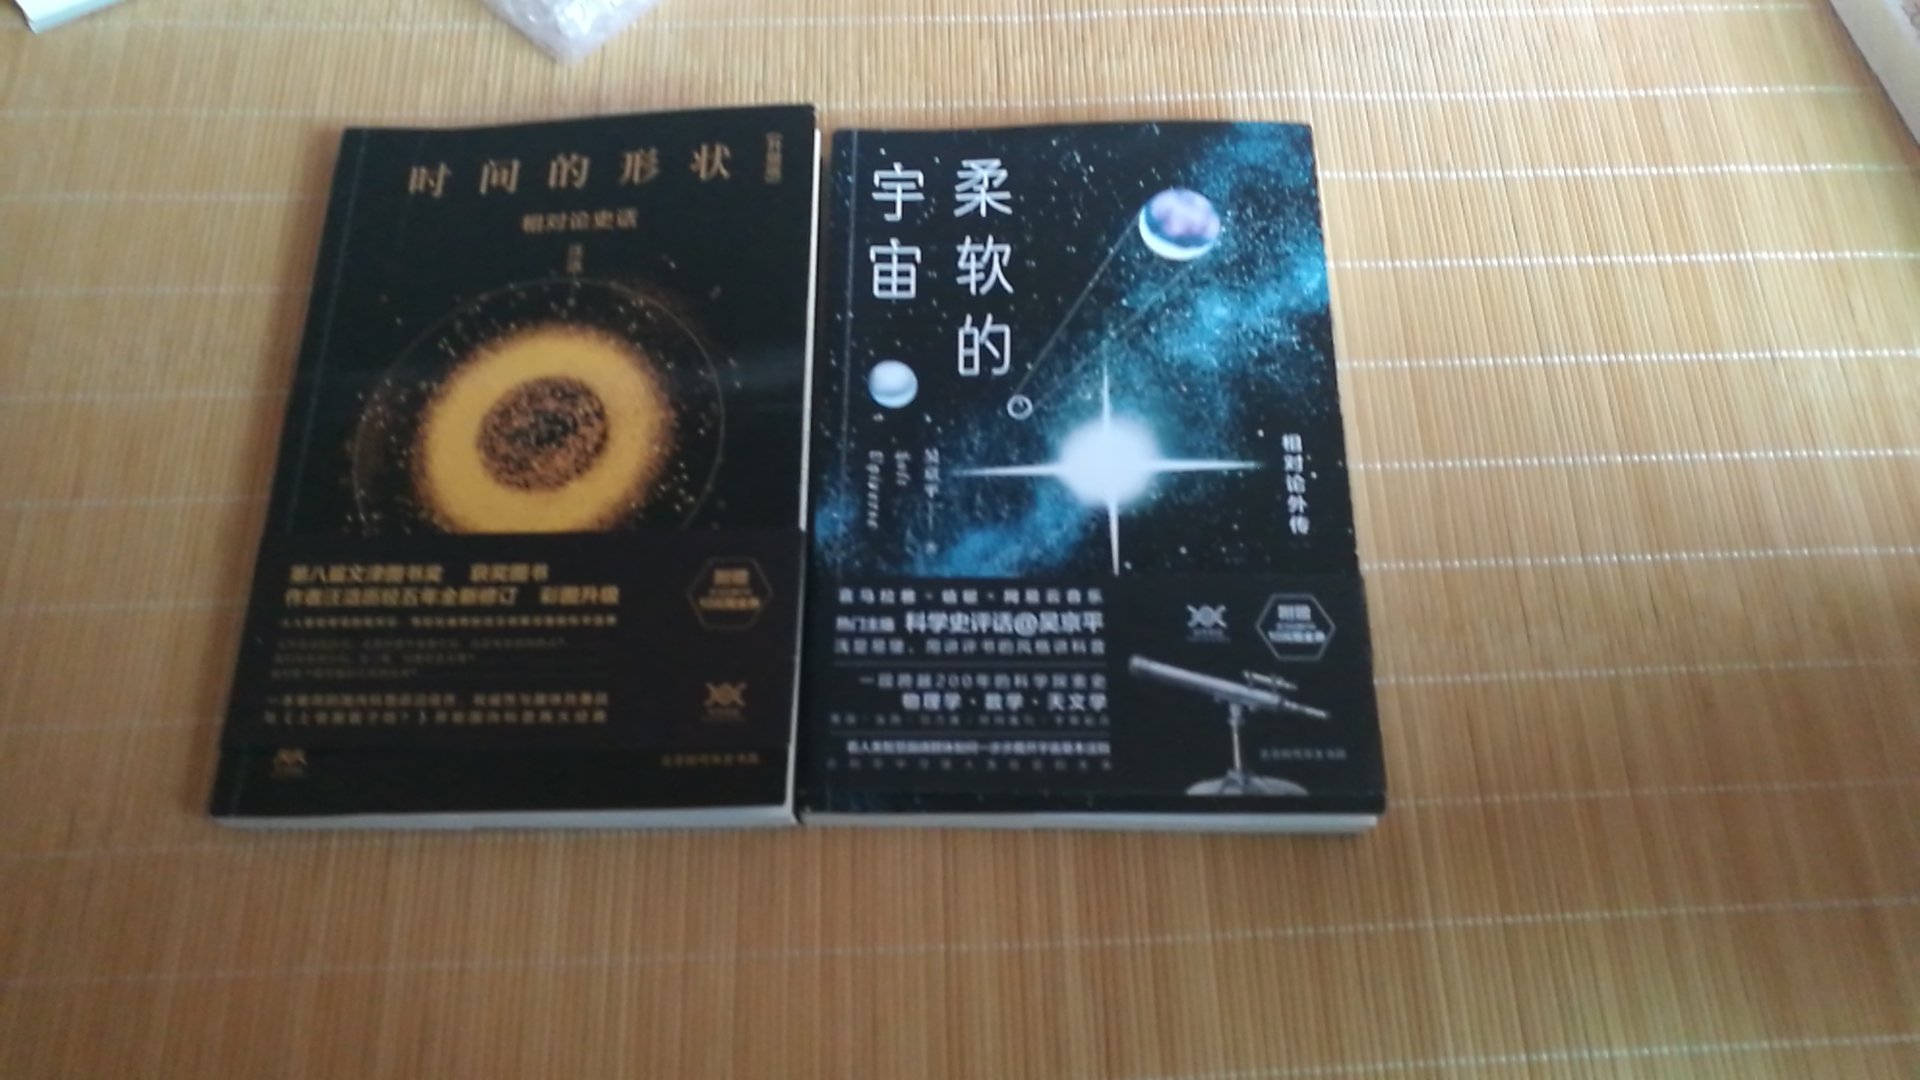 这两本书做为普及一些知识非常有用，能够增加对科幻的了解，什么是科学，什么是幻想。